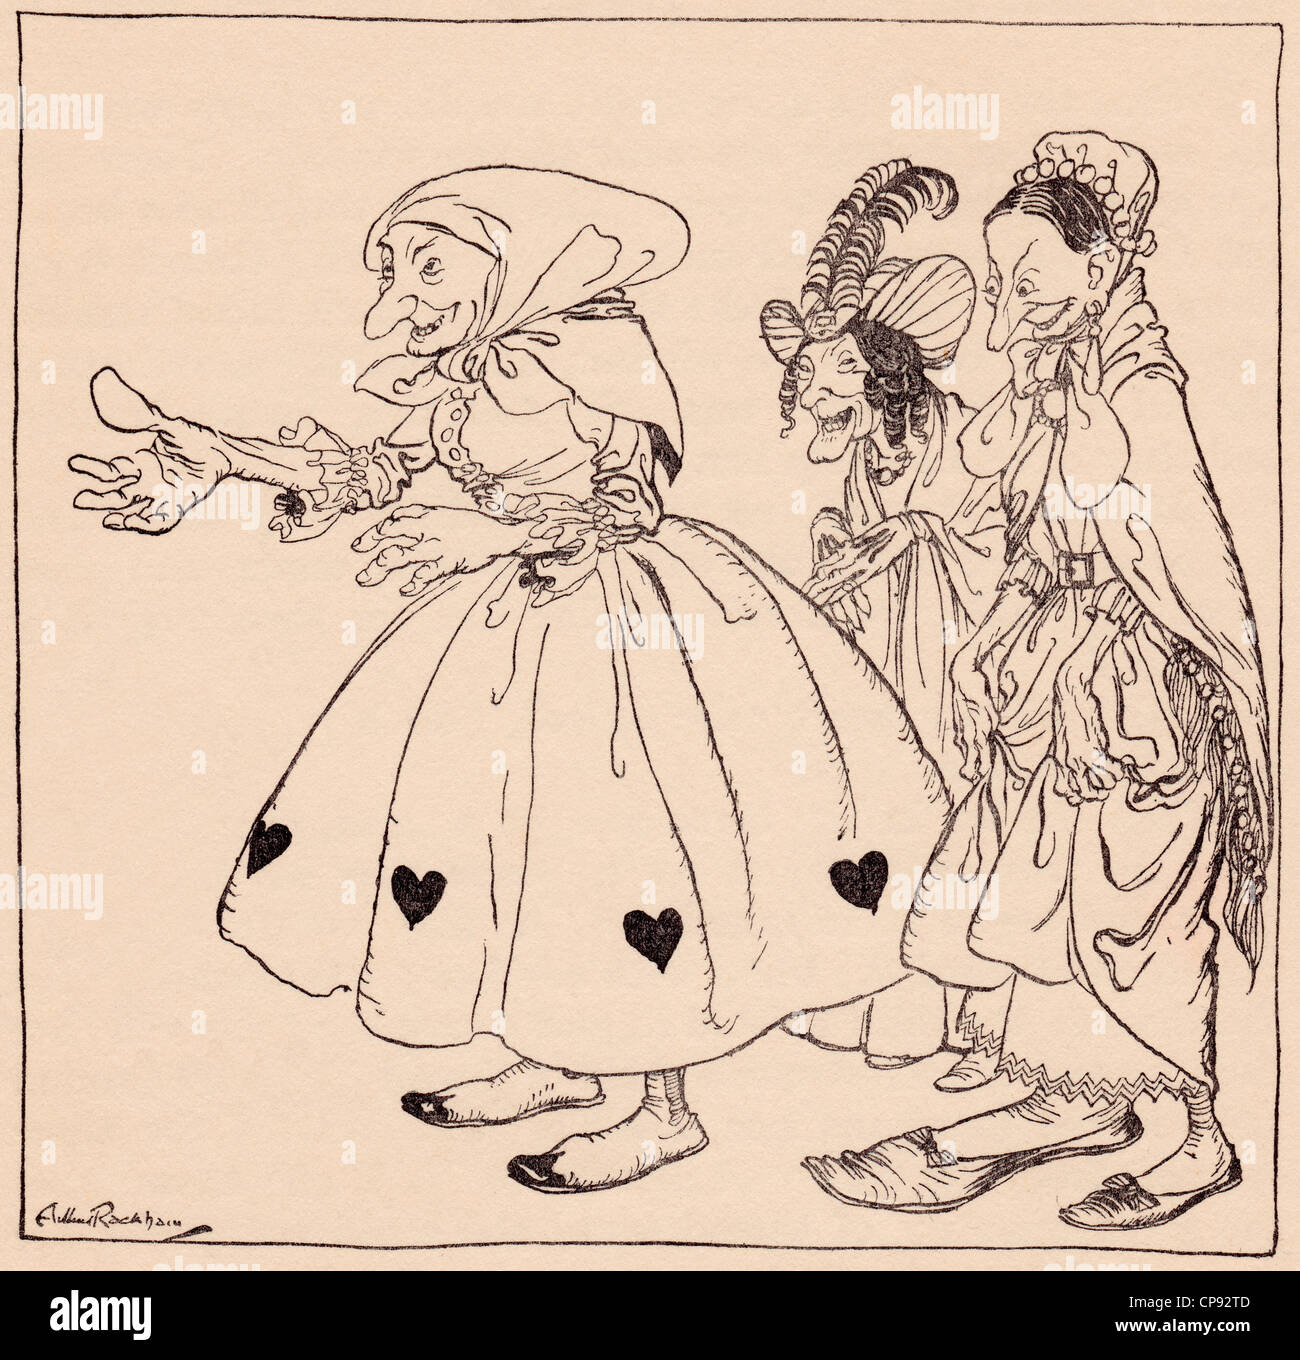 Dans les trois femmes se sont vêtus de l'stangest fashion. Illustration par Arthur Rackham de conte de Grimm Banque D'Images